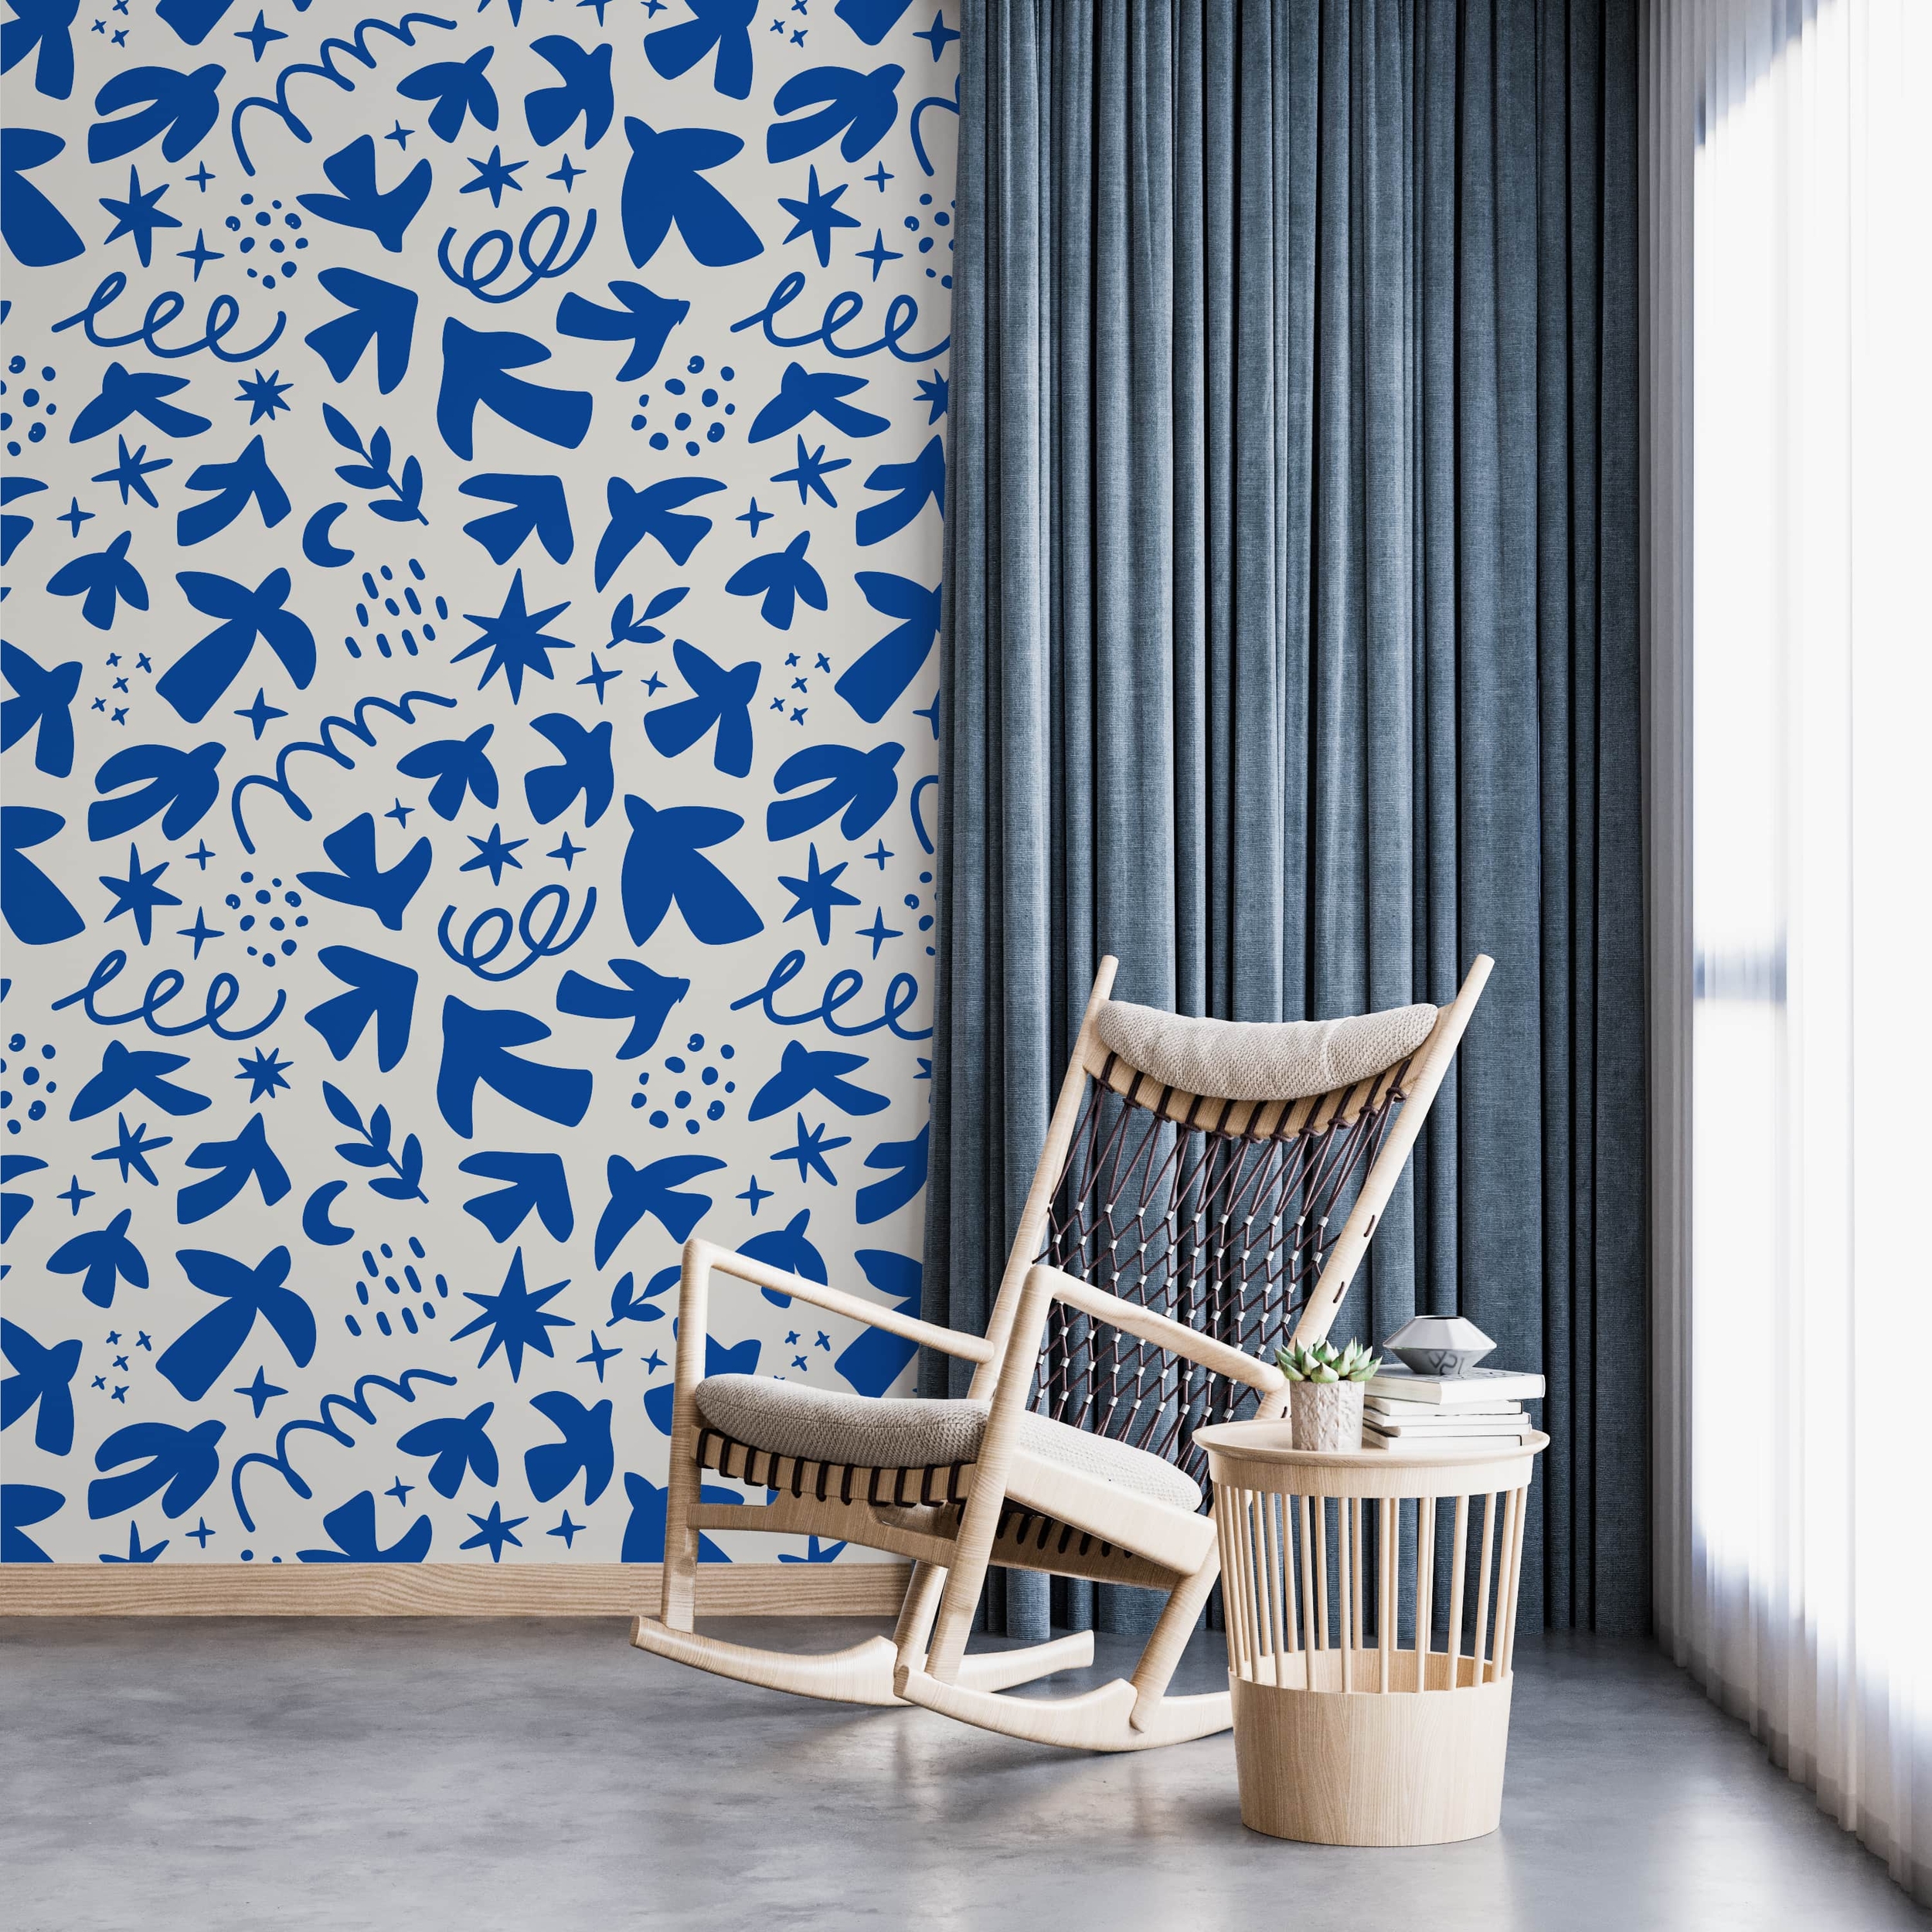 PP100-mur-papier-peint-adhesif-decoratif-revetement-vinyle-motifs-inspiré-style-Matisse-motif-organique-renovation-meuble-mur-min